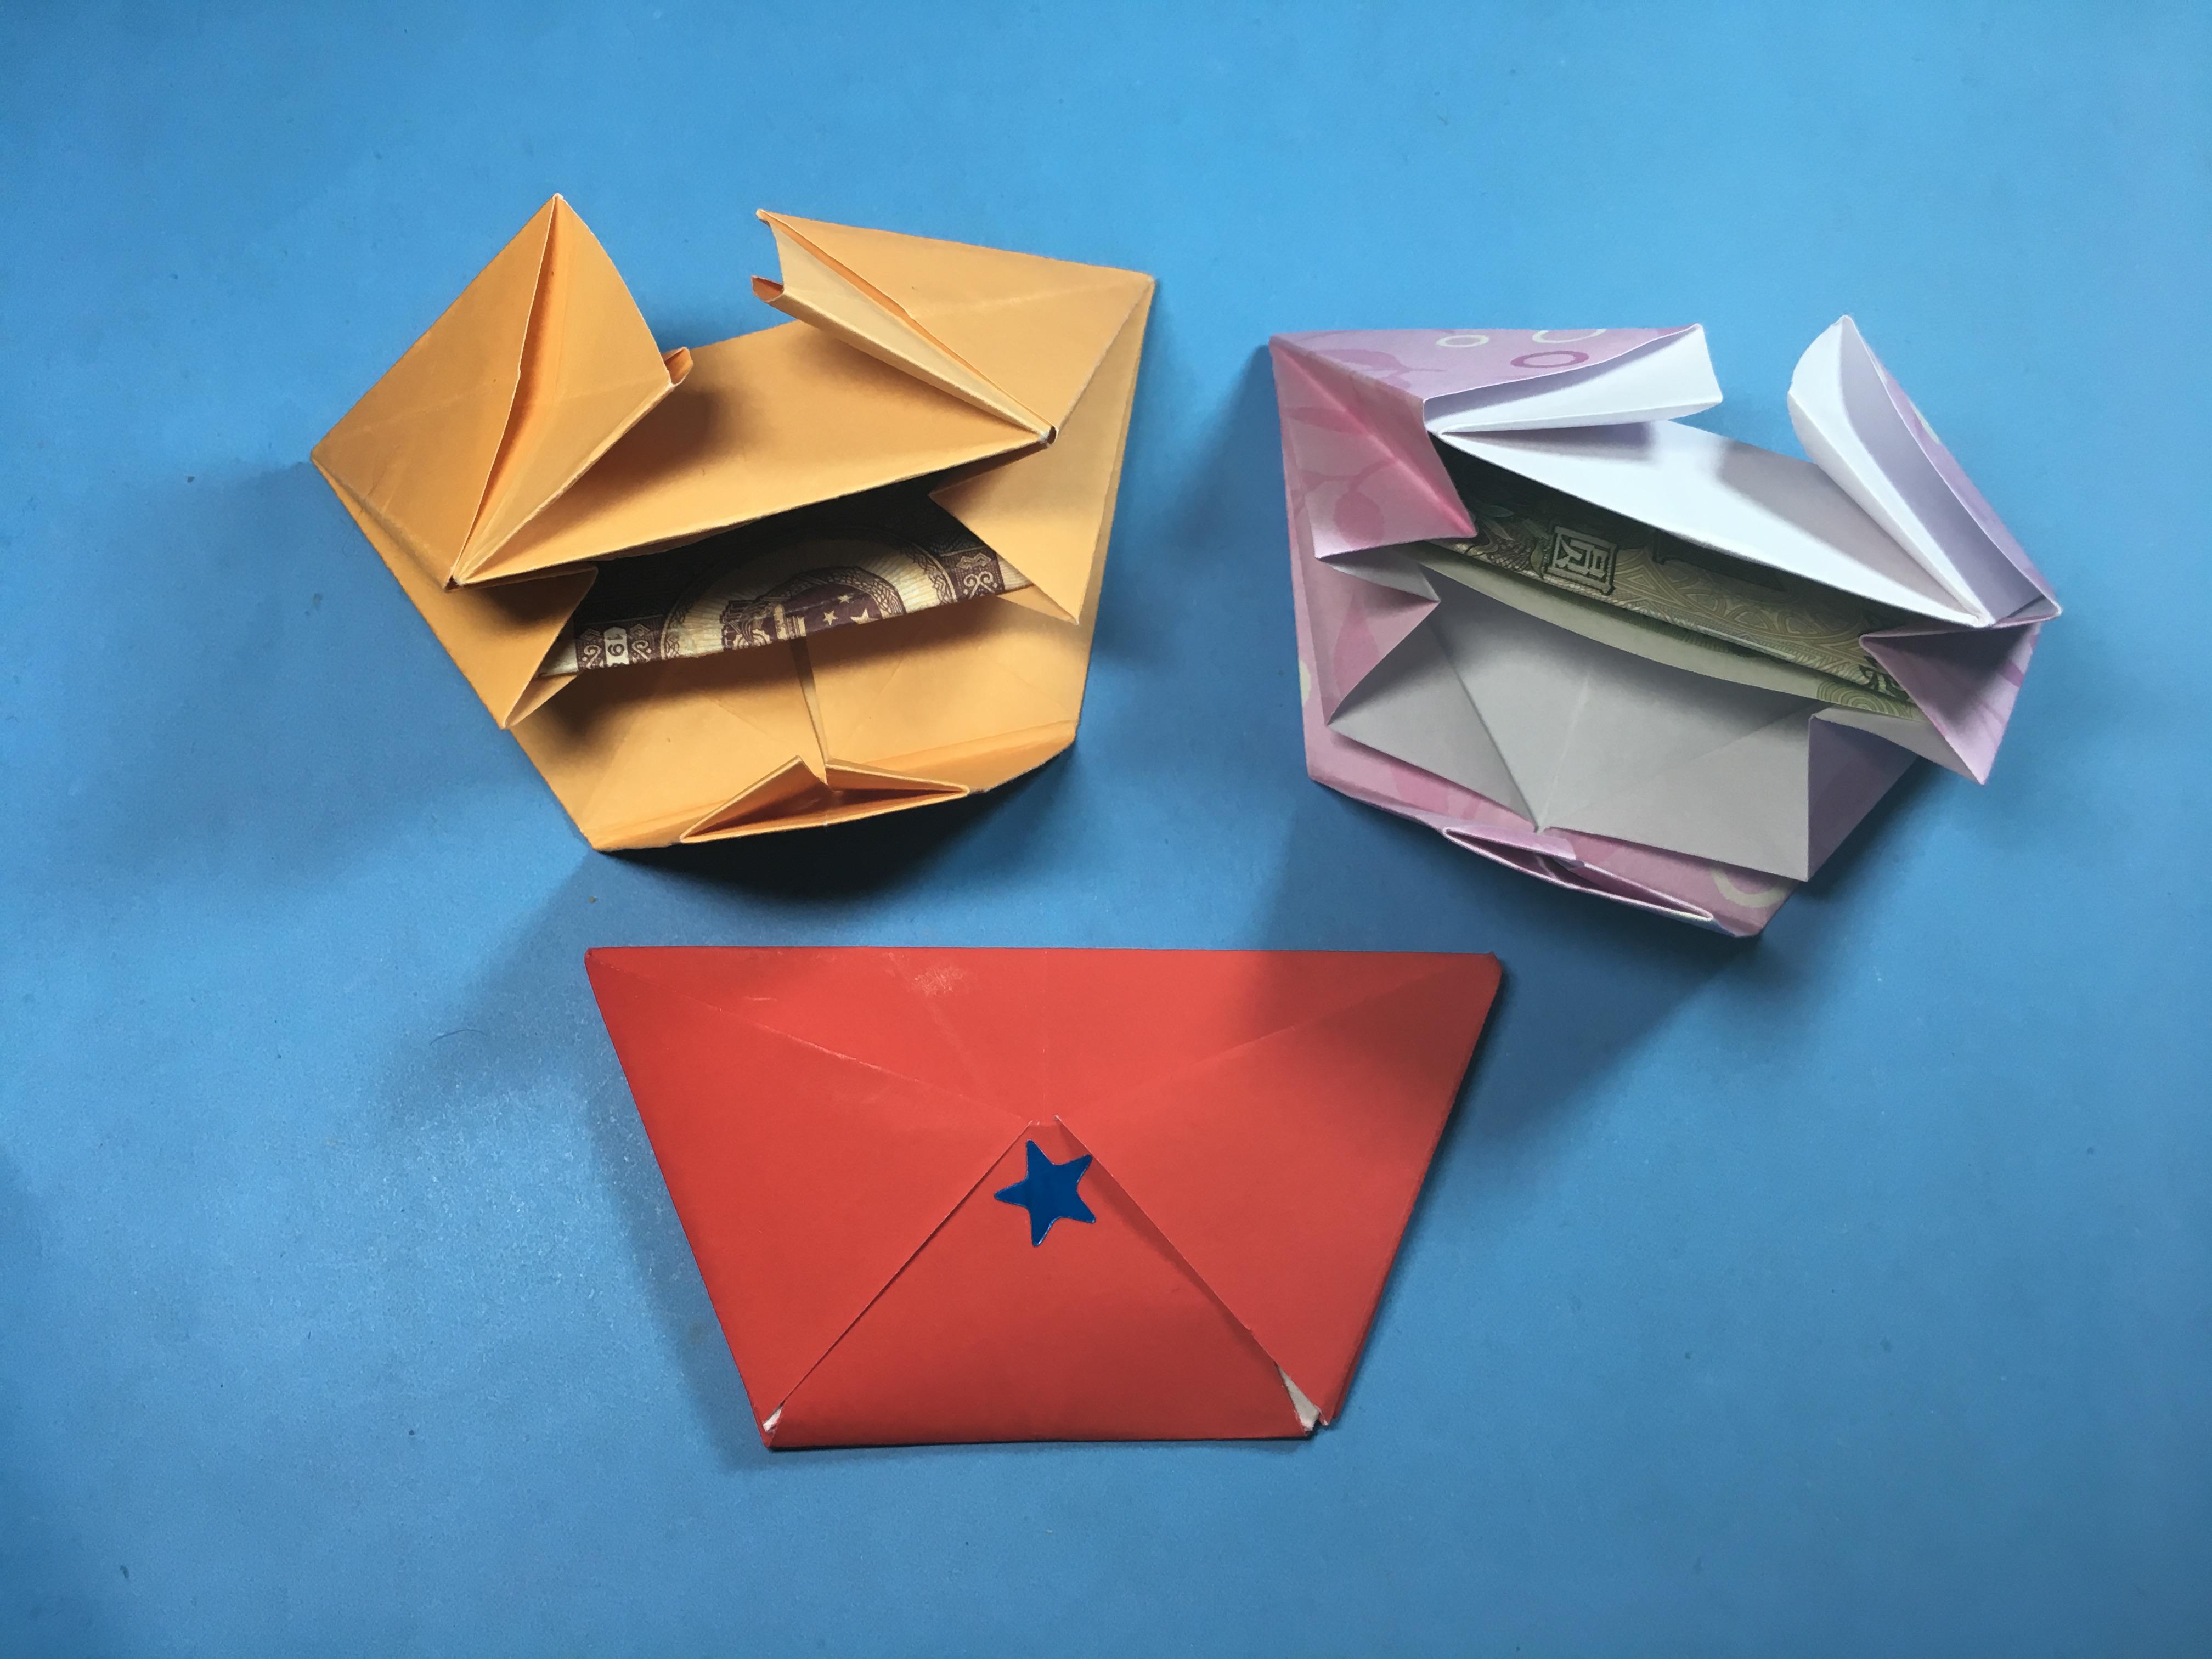 创意diy手工折纸迷你小钱包,一张正方形纸就能折出漂亮的钱包